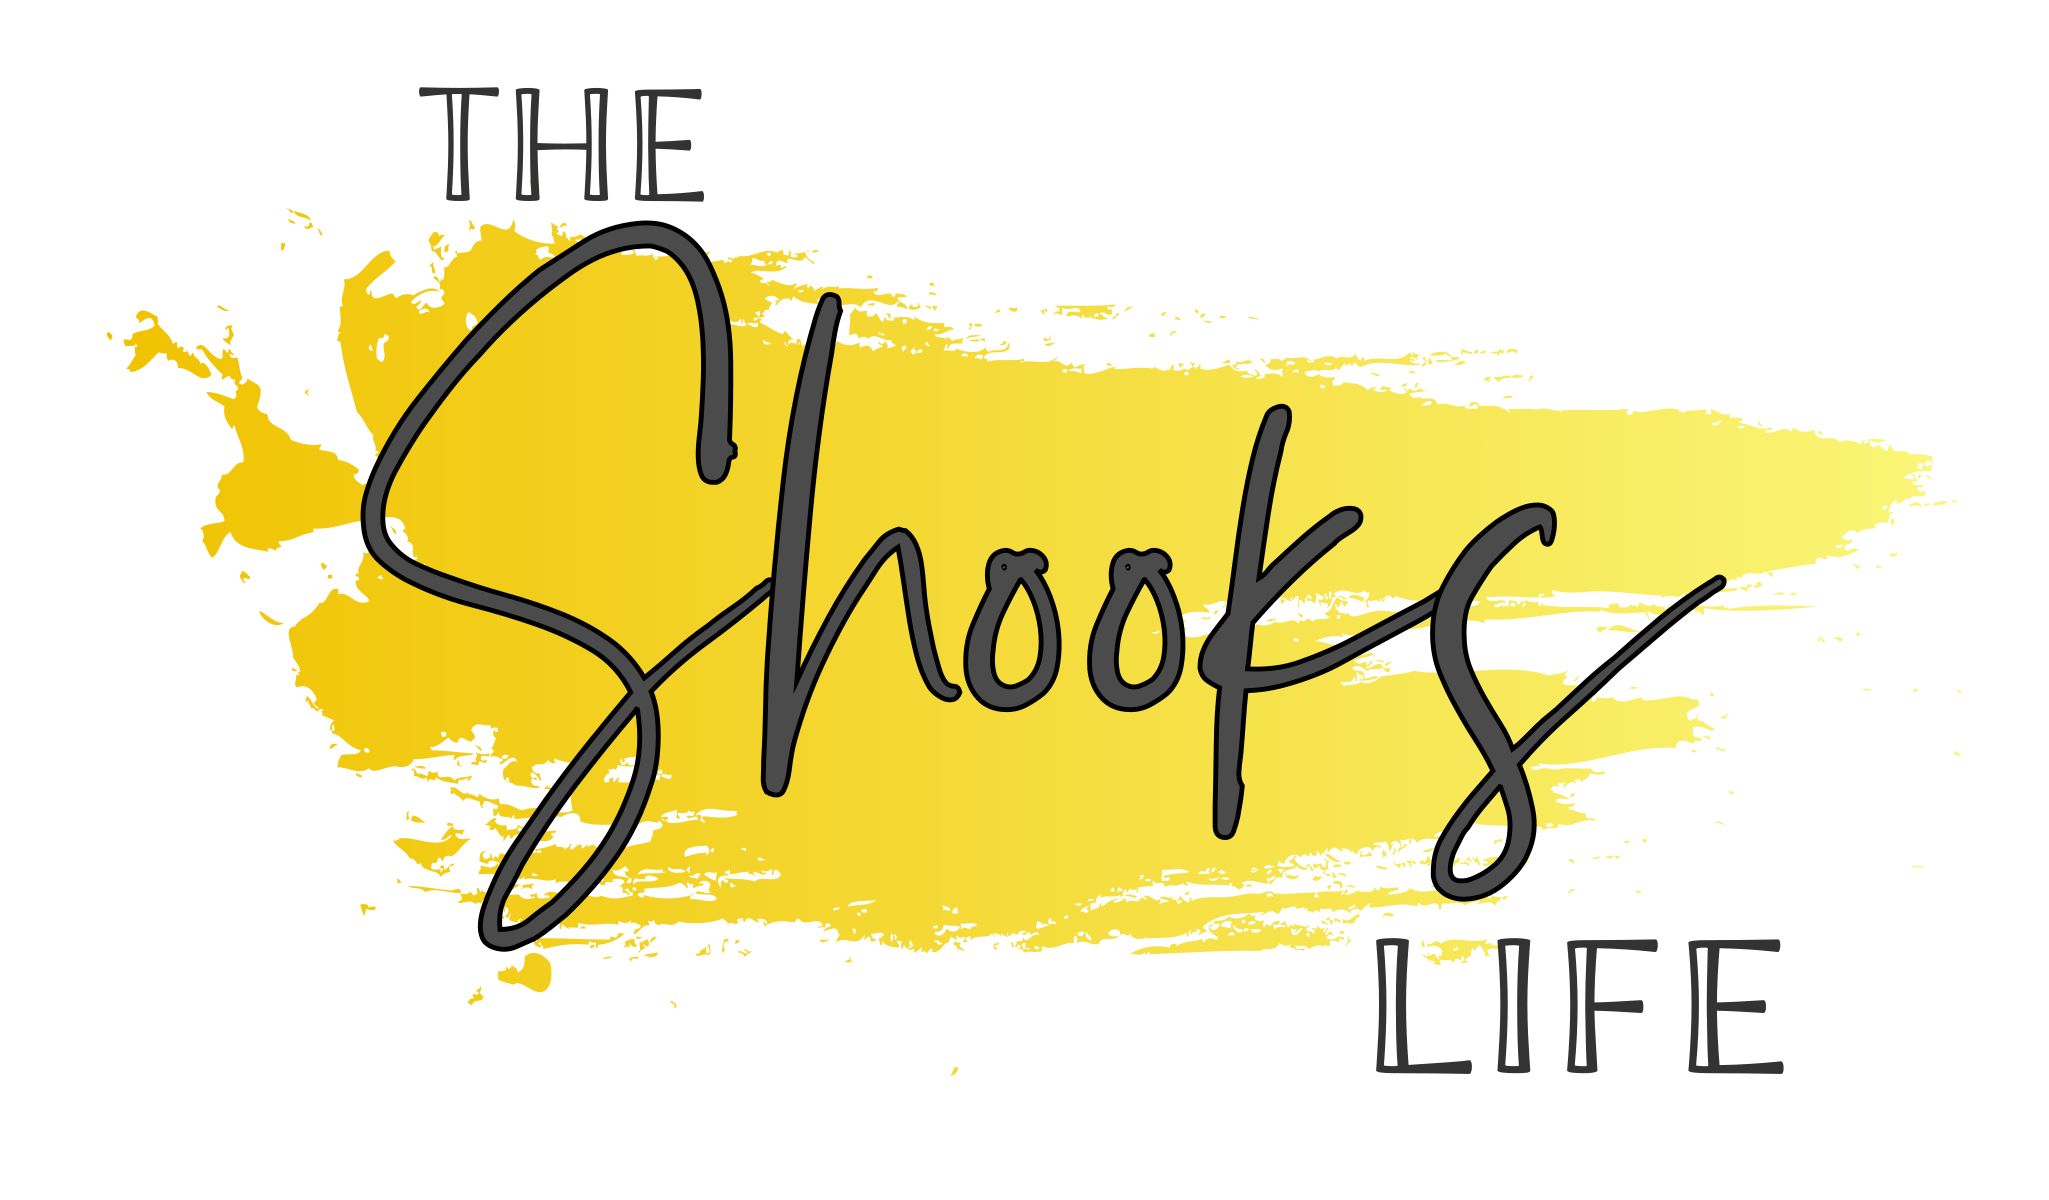 The Shooks Life